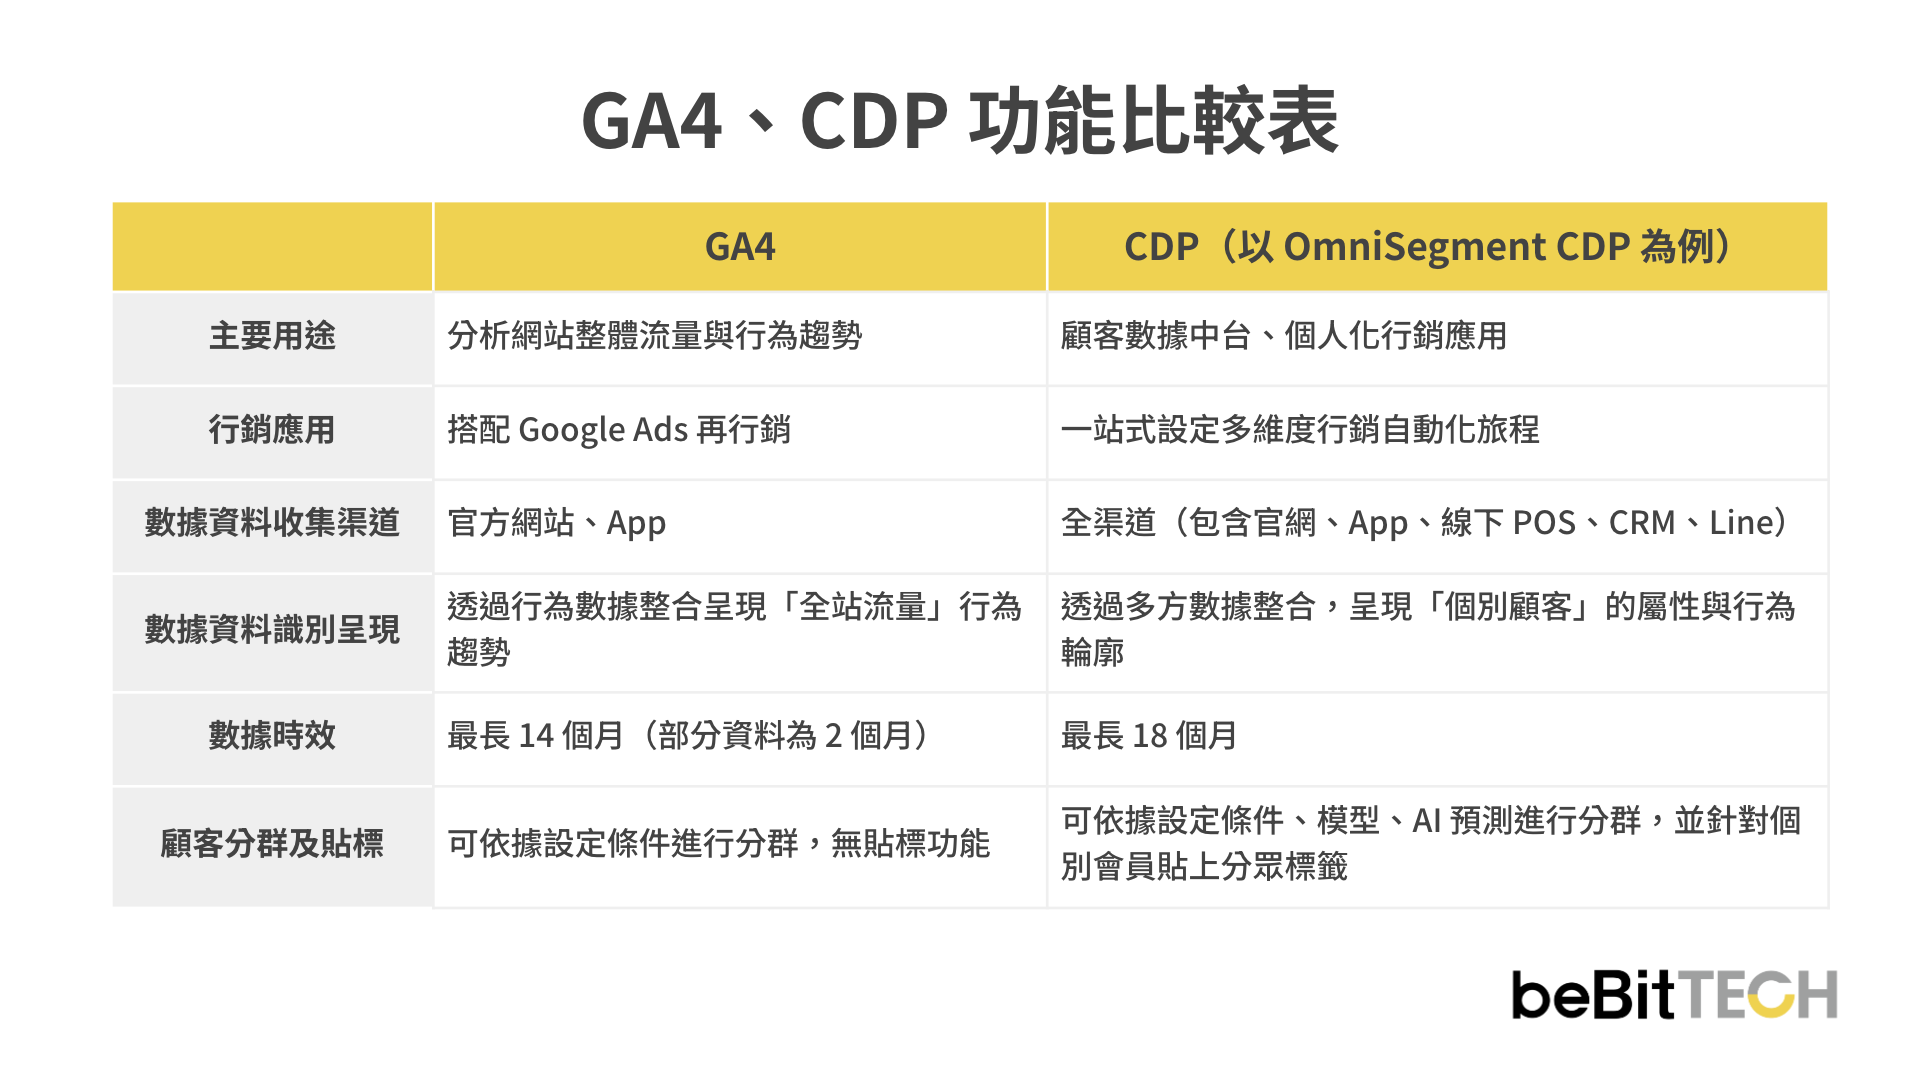 ga4-cdp-comparison-2